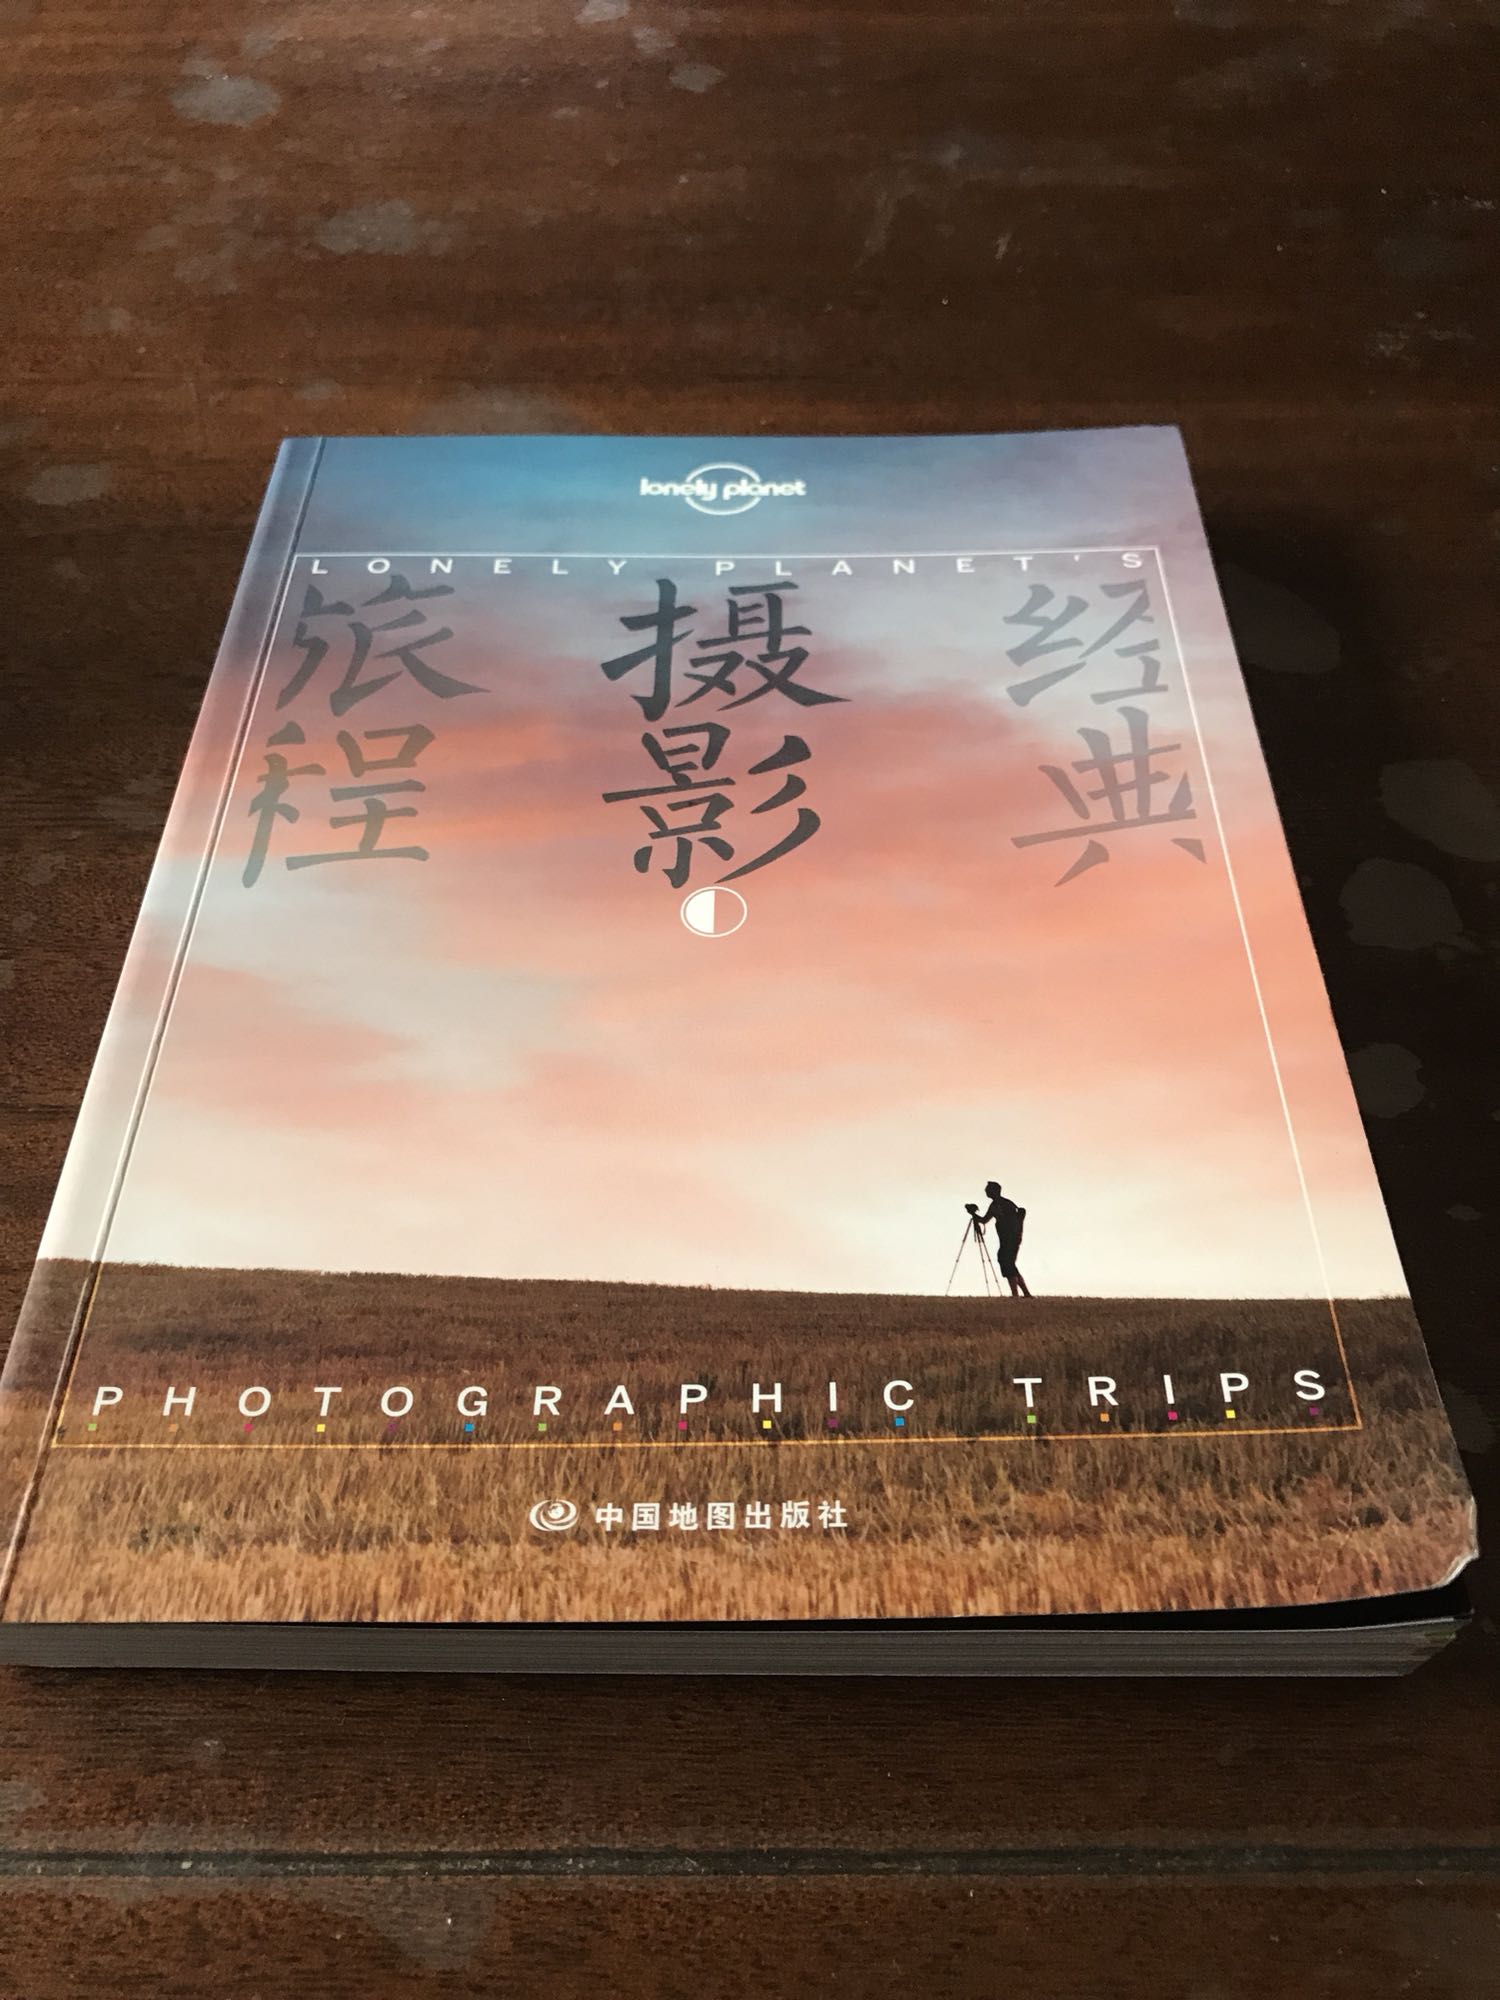 爱摄影，爱旅行，有美图，有技巧，非常实用和精美的好书